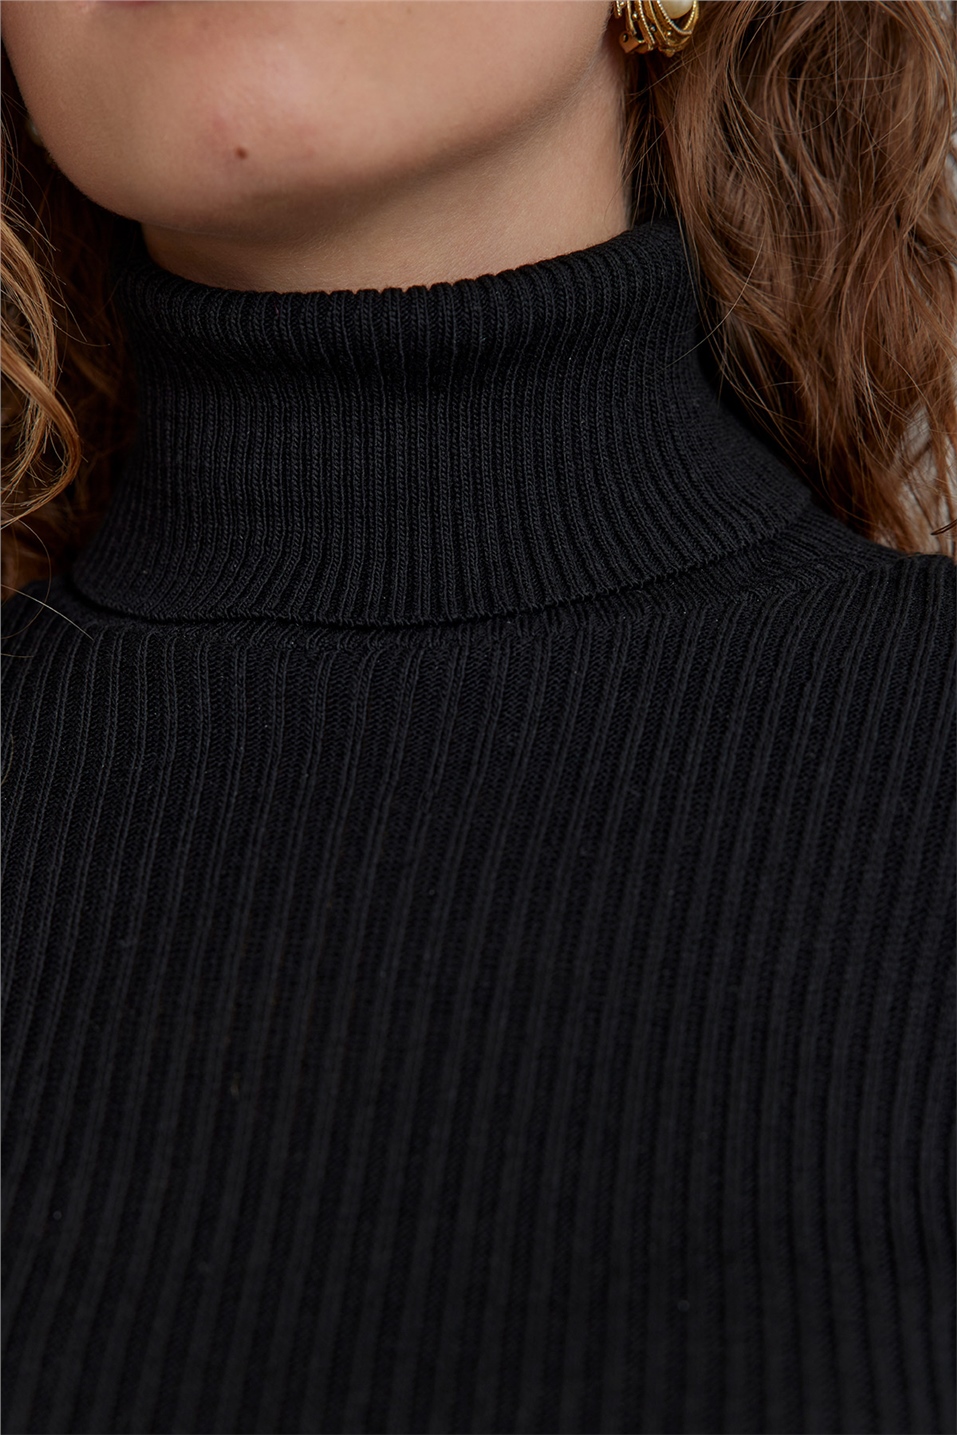 Black Turtleneck Knitwear Sweater